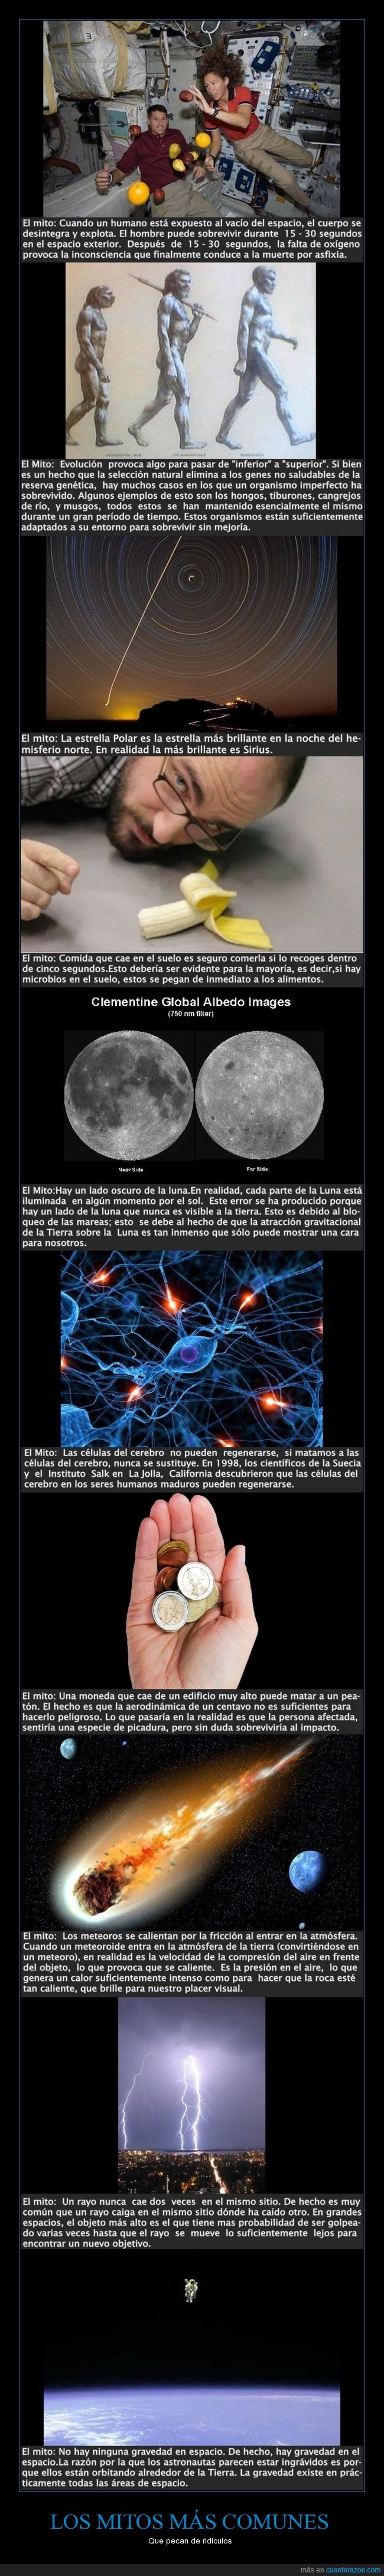 ciencia,cuerpo en espacio explota,Evolución,La estrella Polar,La gravedad en el espacio,la regla de los 5 segundos,lado oscuro de la Luna,mitos,Sirius